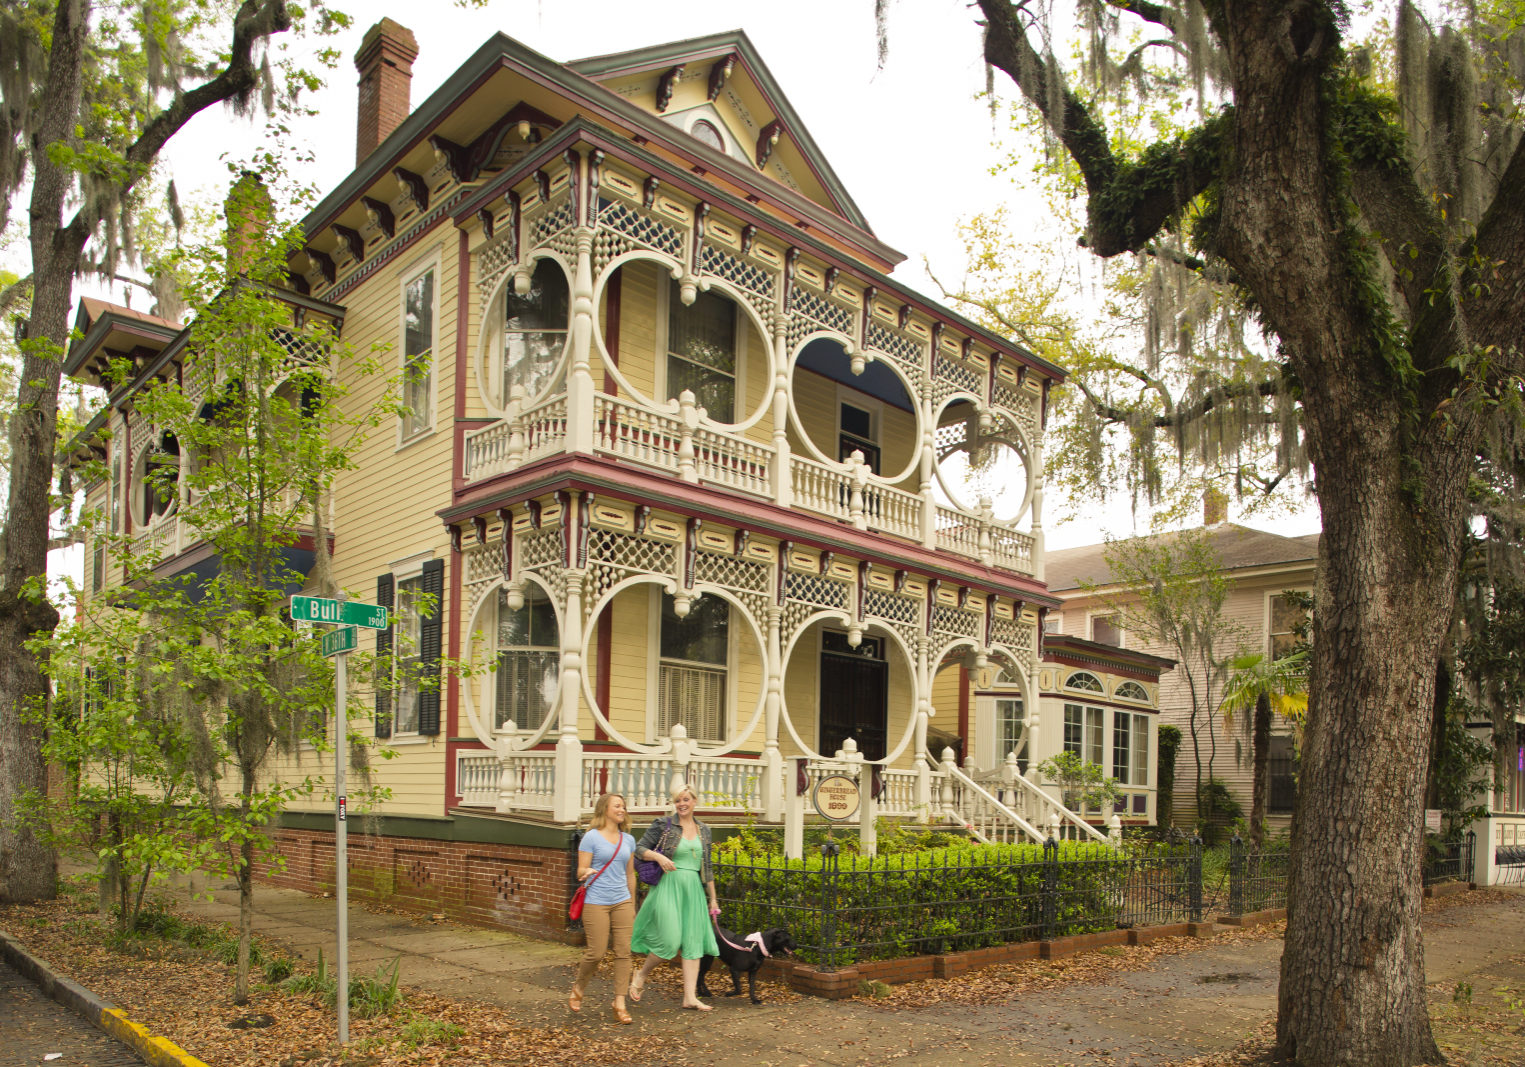 Das Gingerbread House in Savannah gehört zu den Sehenswürdigkeiten auf dem geführten Spaziergang  Foto: GDEcD